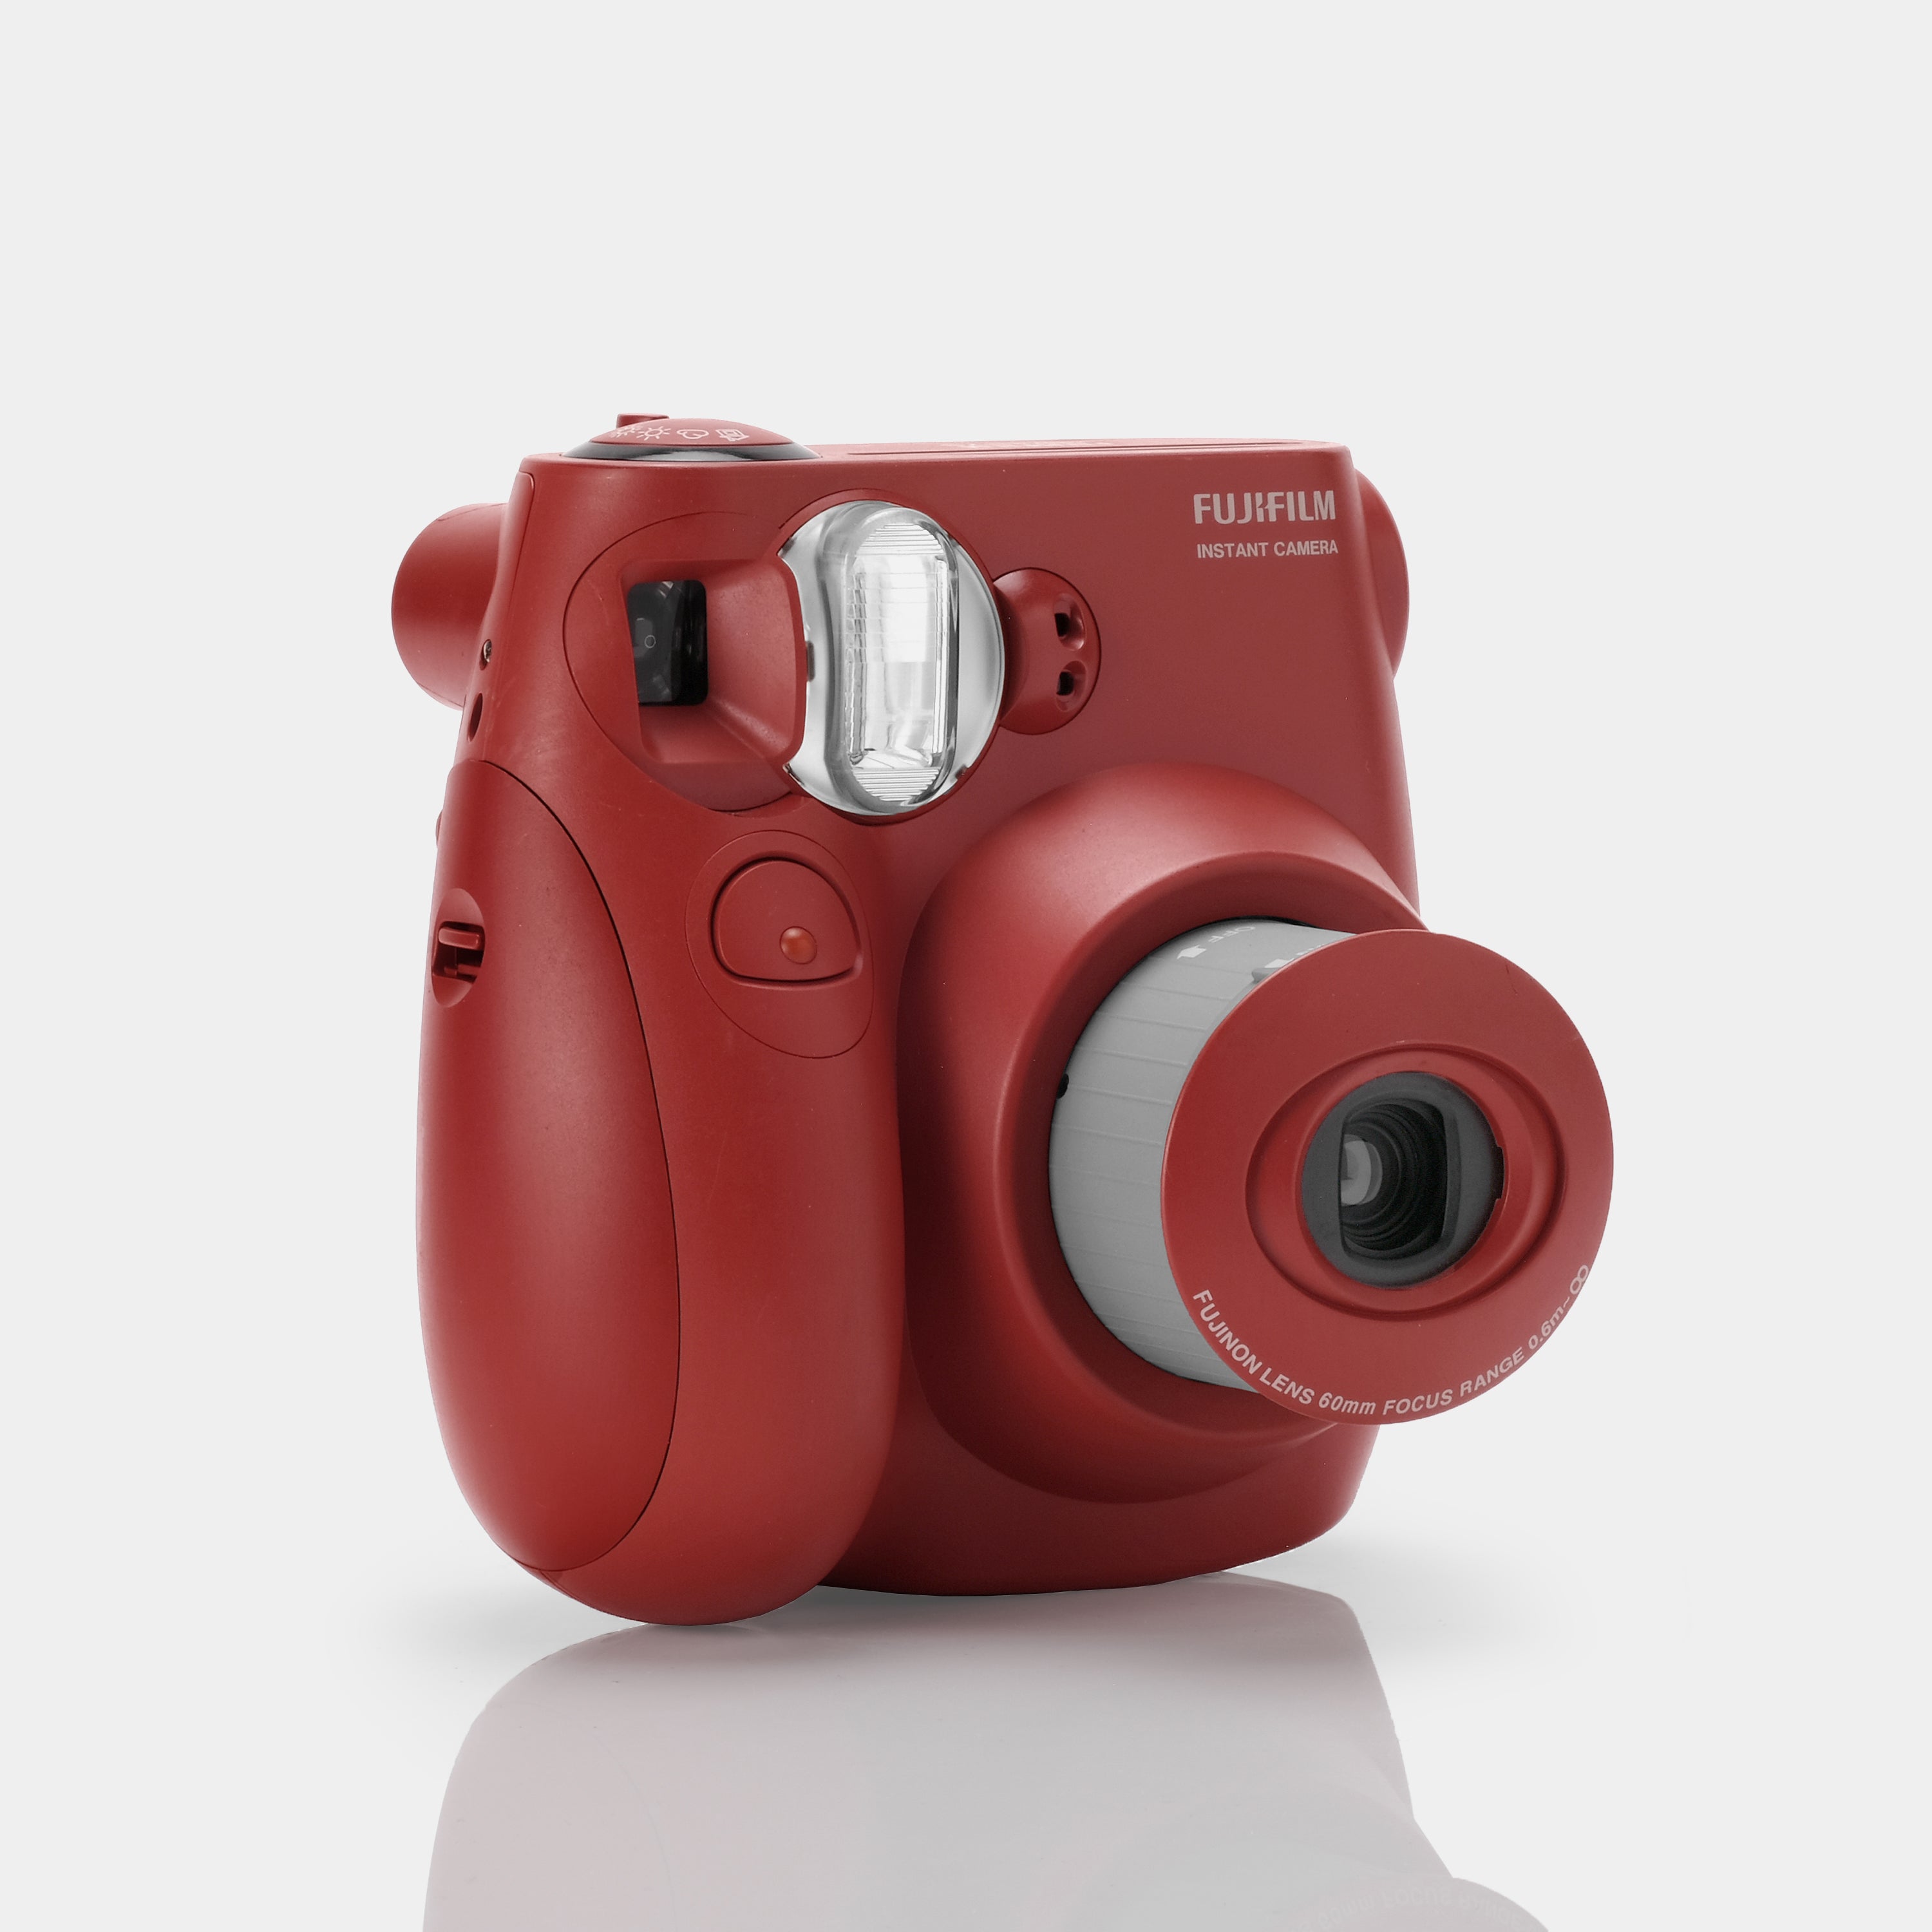 Fujifilm Instax Mini 7S Red Instant Film Camera - Refurbished